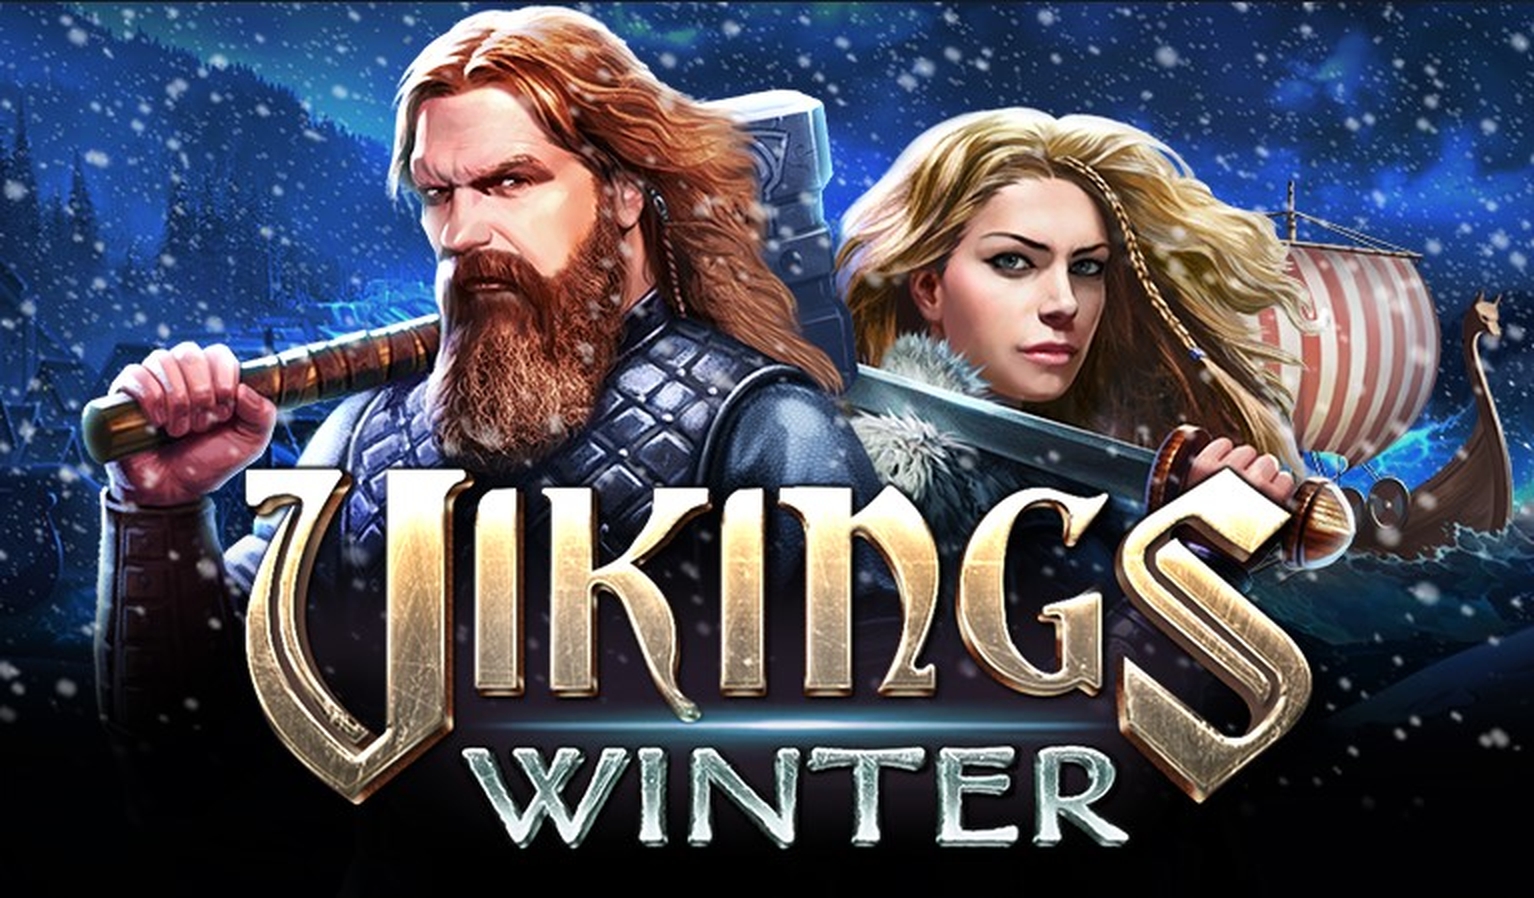 Vikings Winter demo